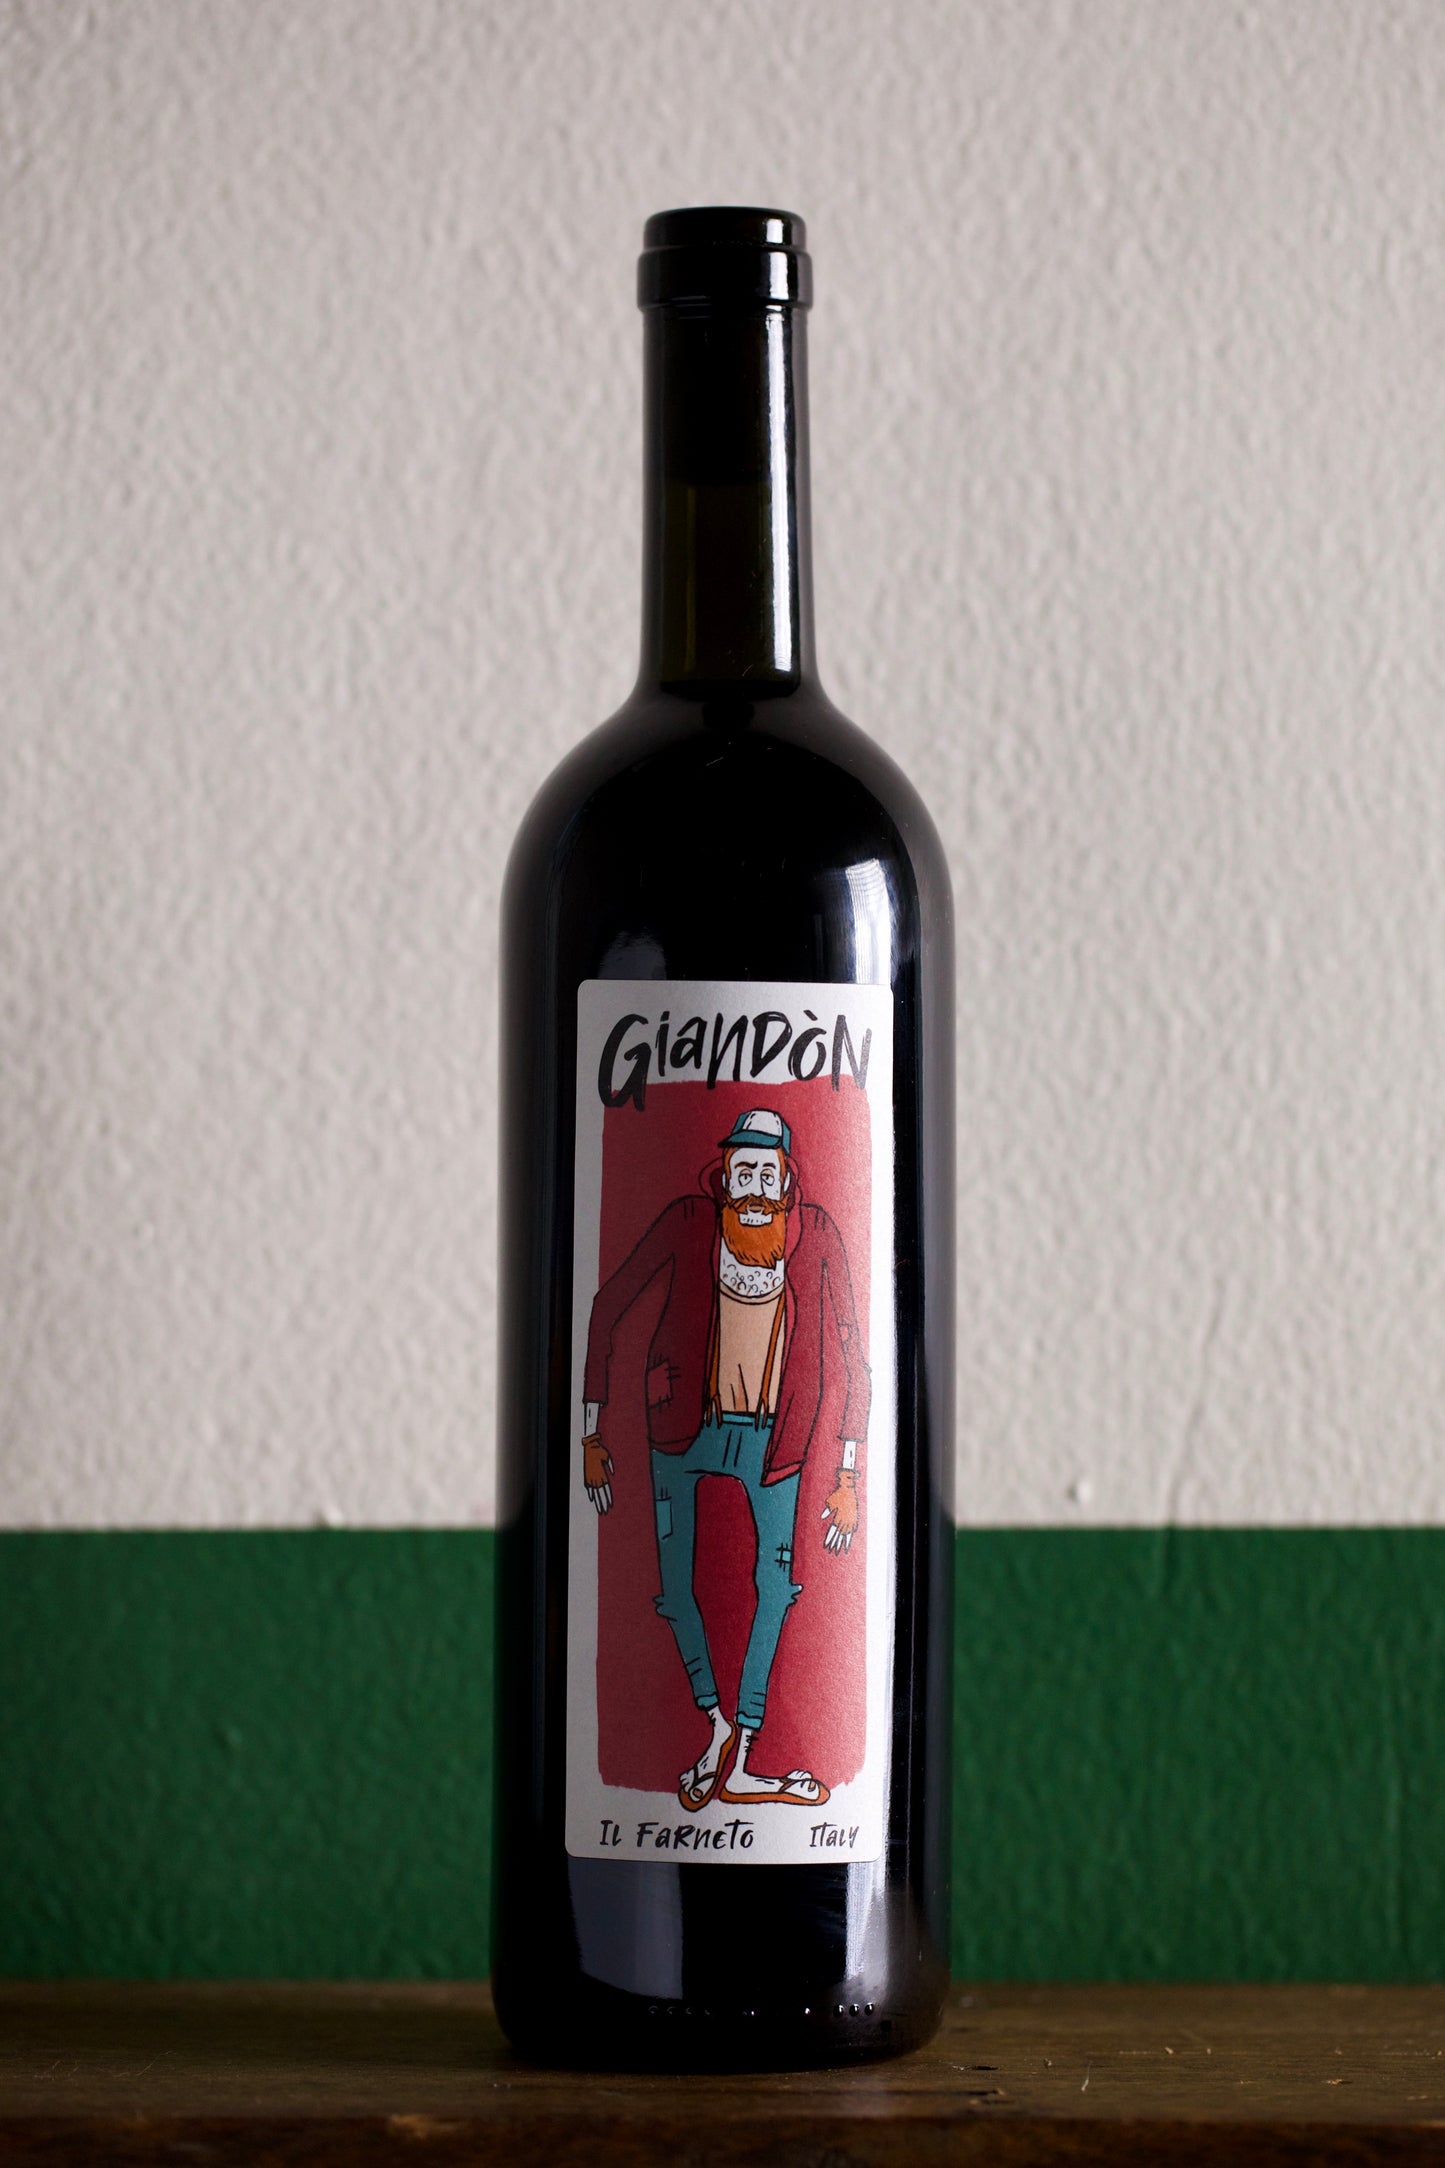 Bottle of Il Farneto 'Giandon' Rosso 2019 750ml